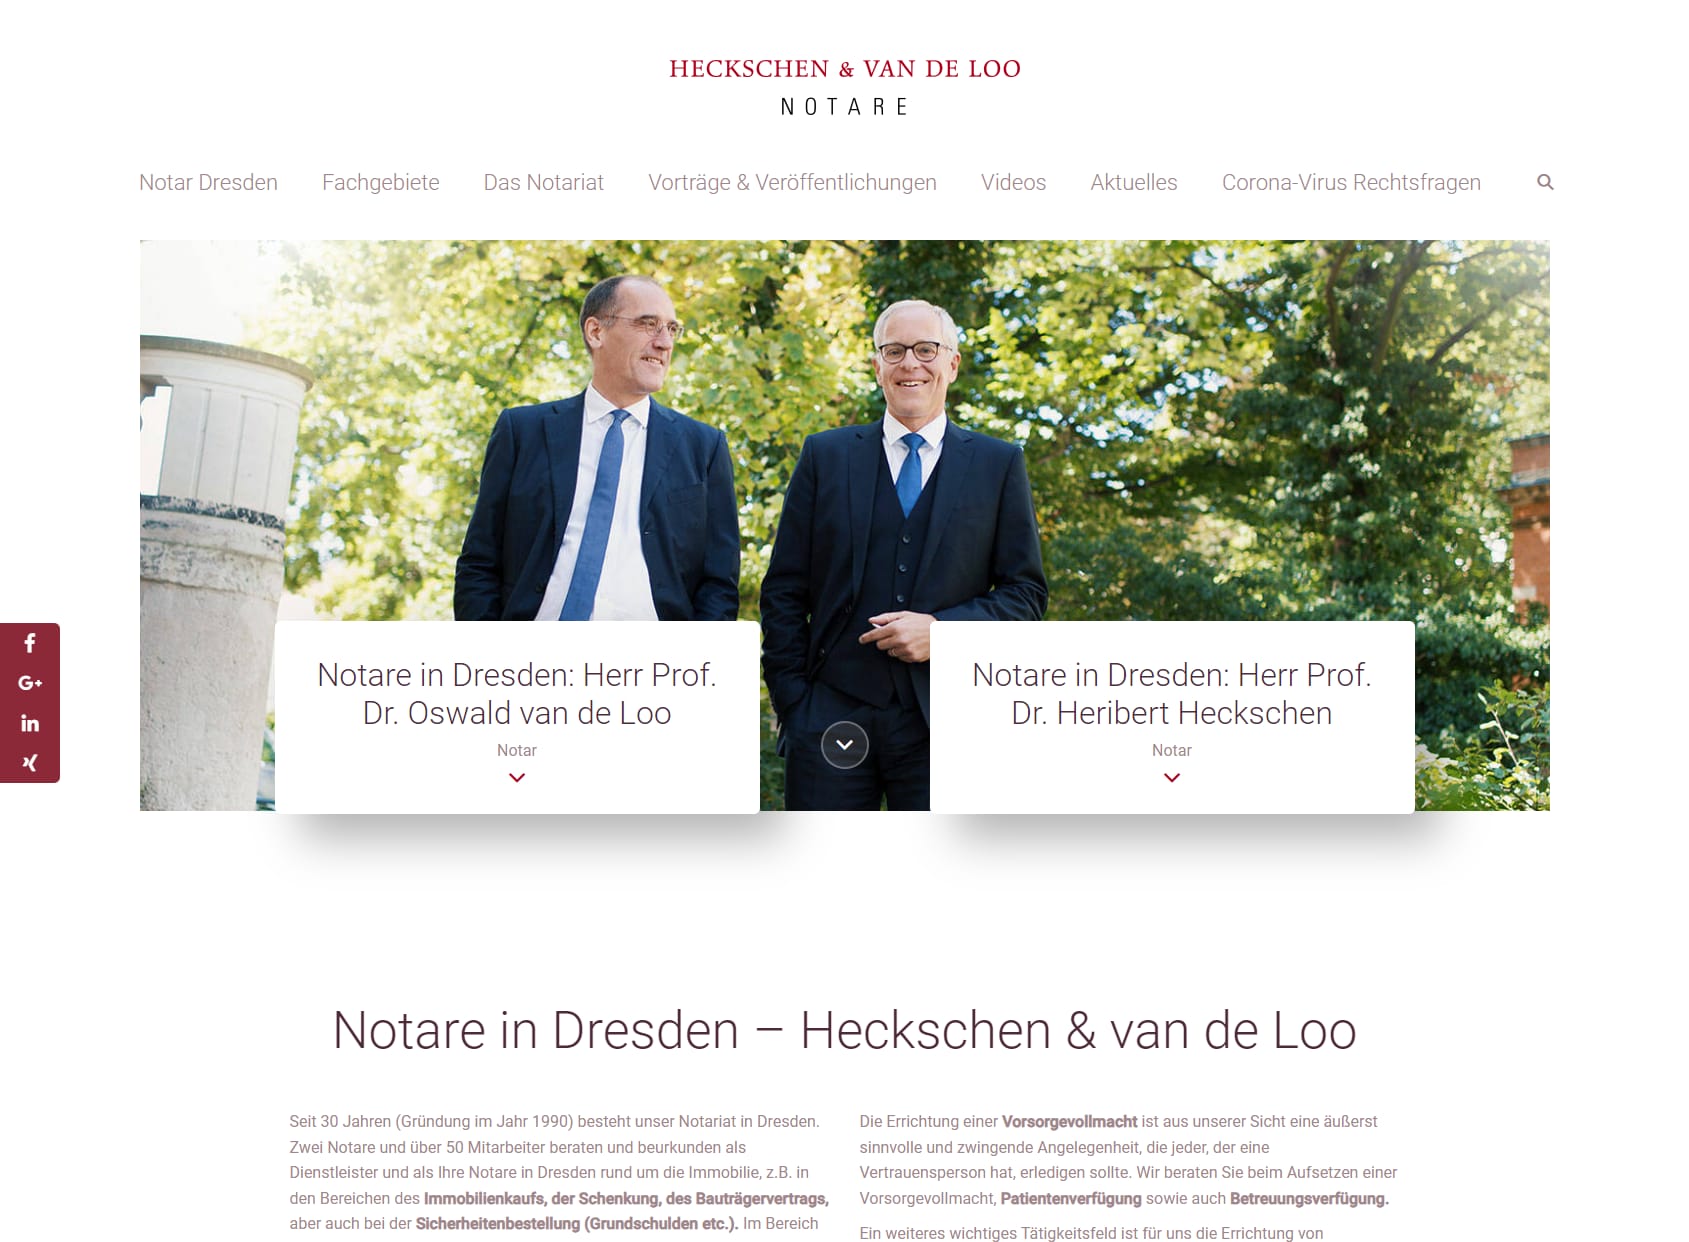 Notary Heckschen & van de Loo